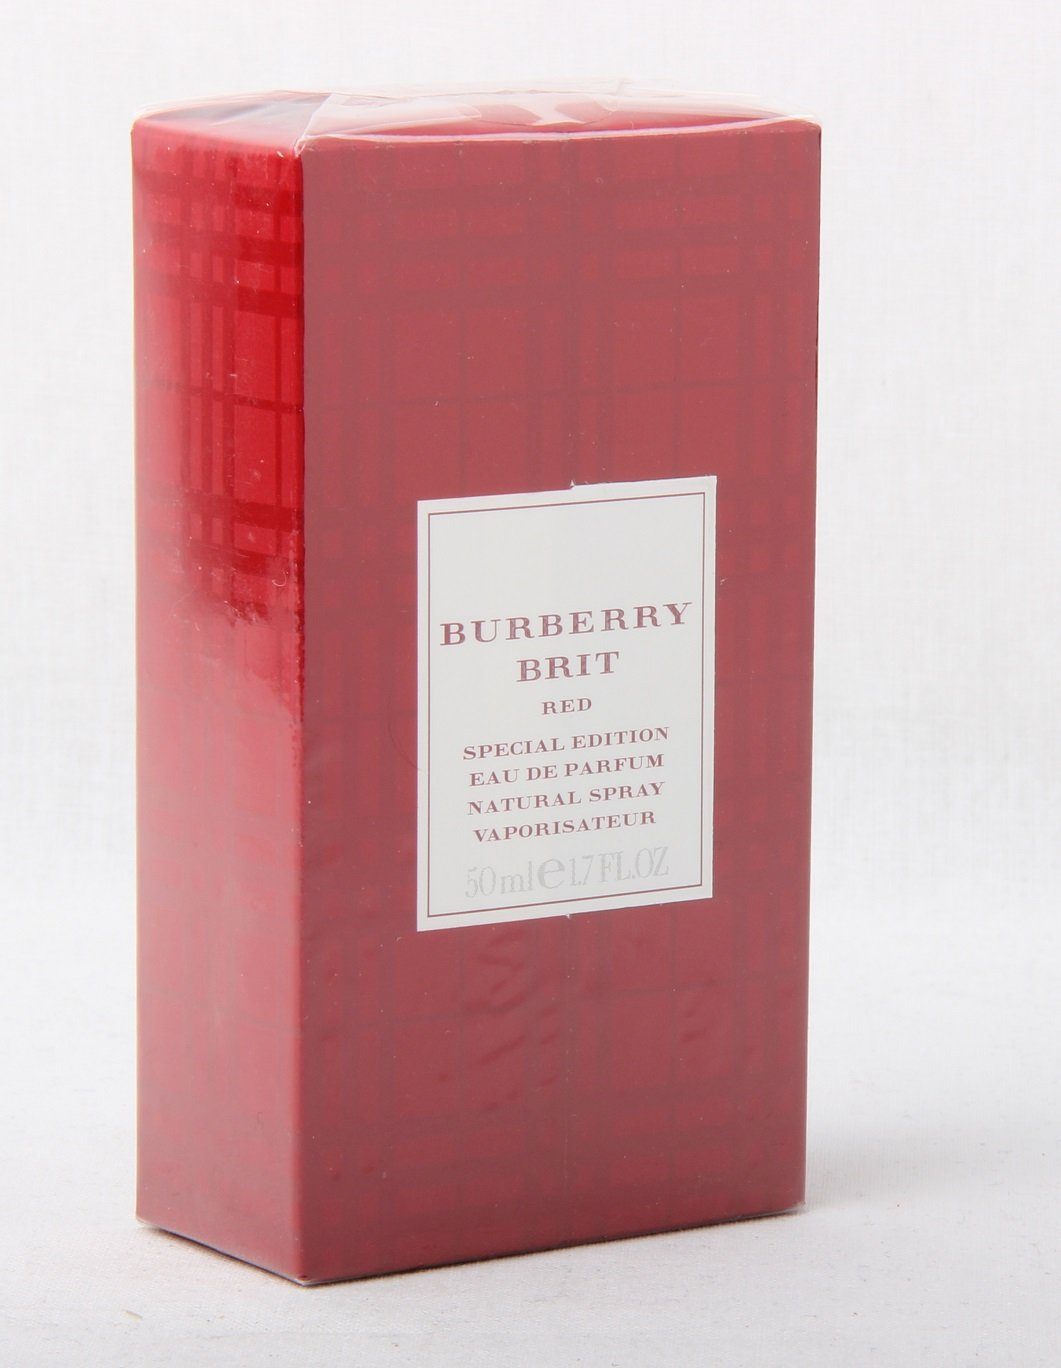 Edition Red Parfum de Eau 50ml Eau BURBERRY de Brit Parfum Special Spray Burberry